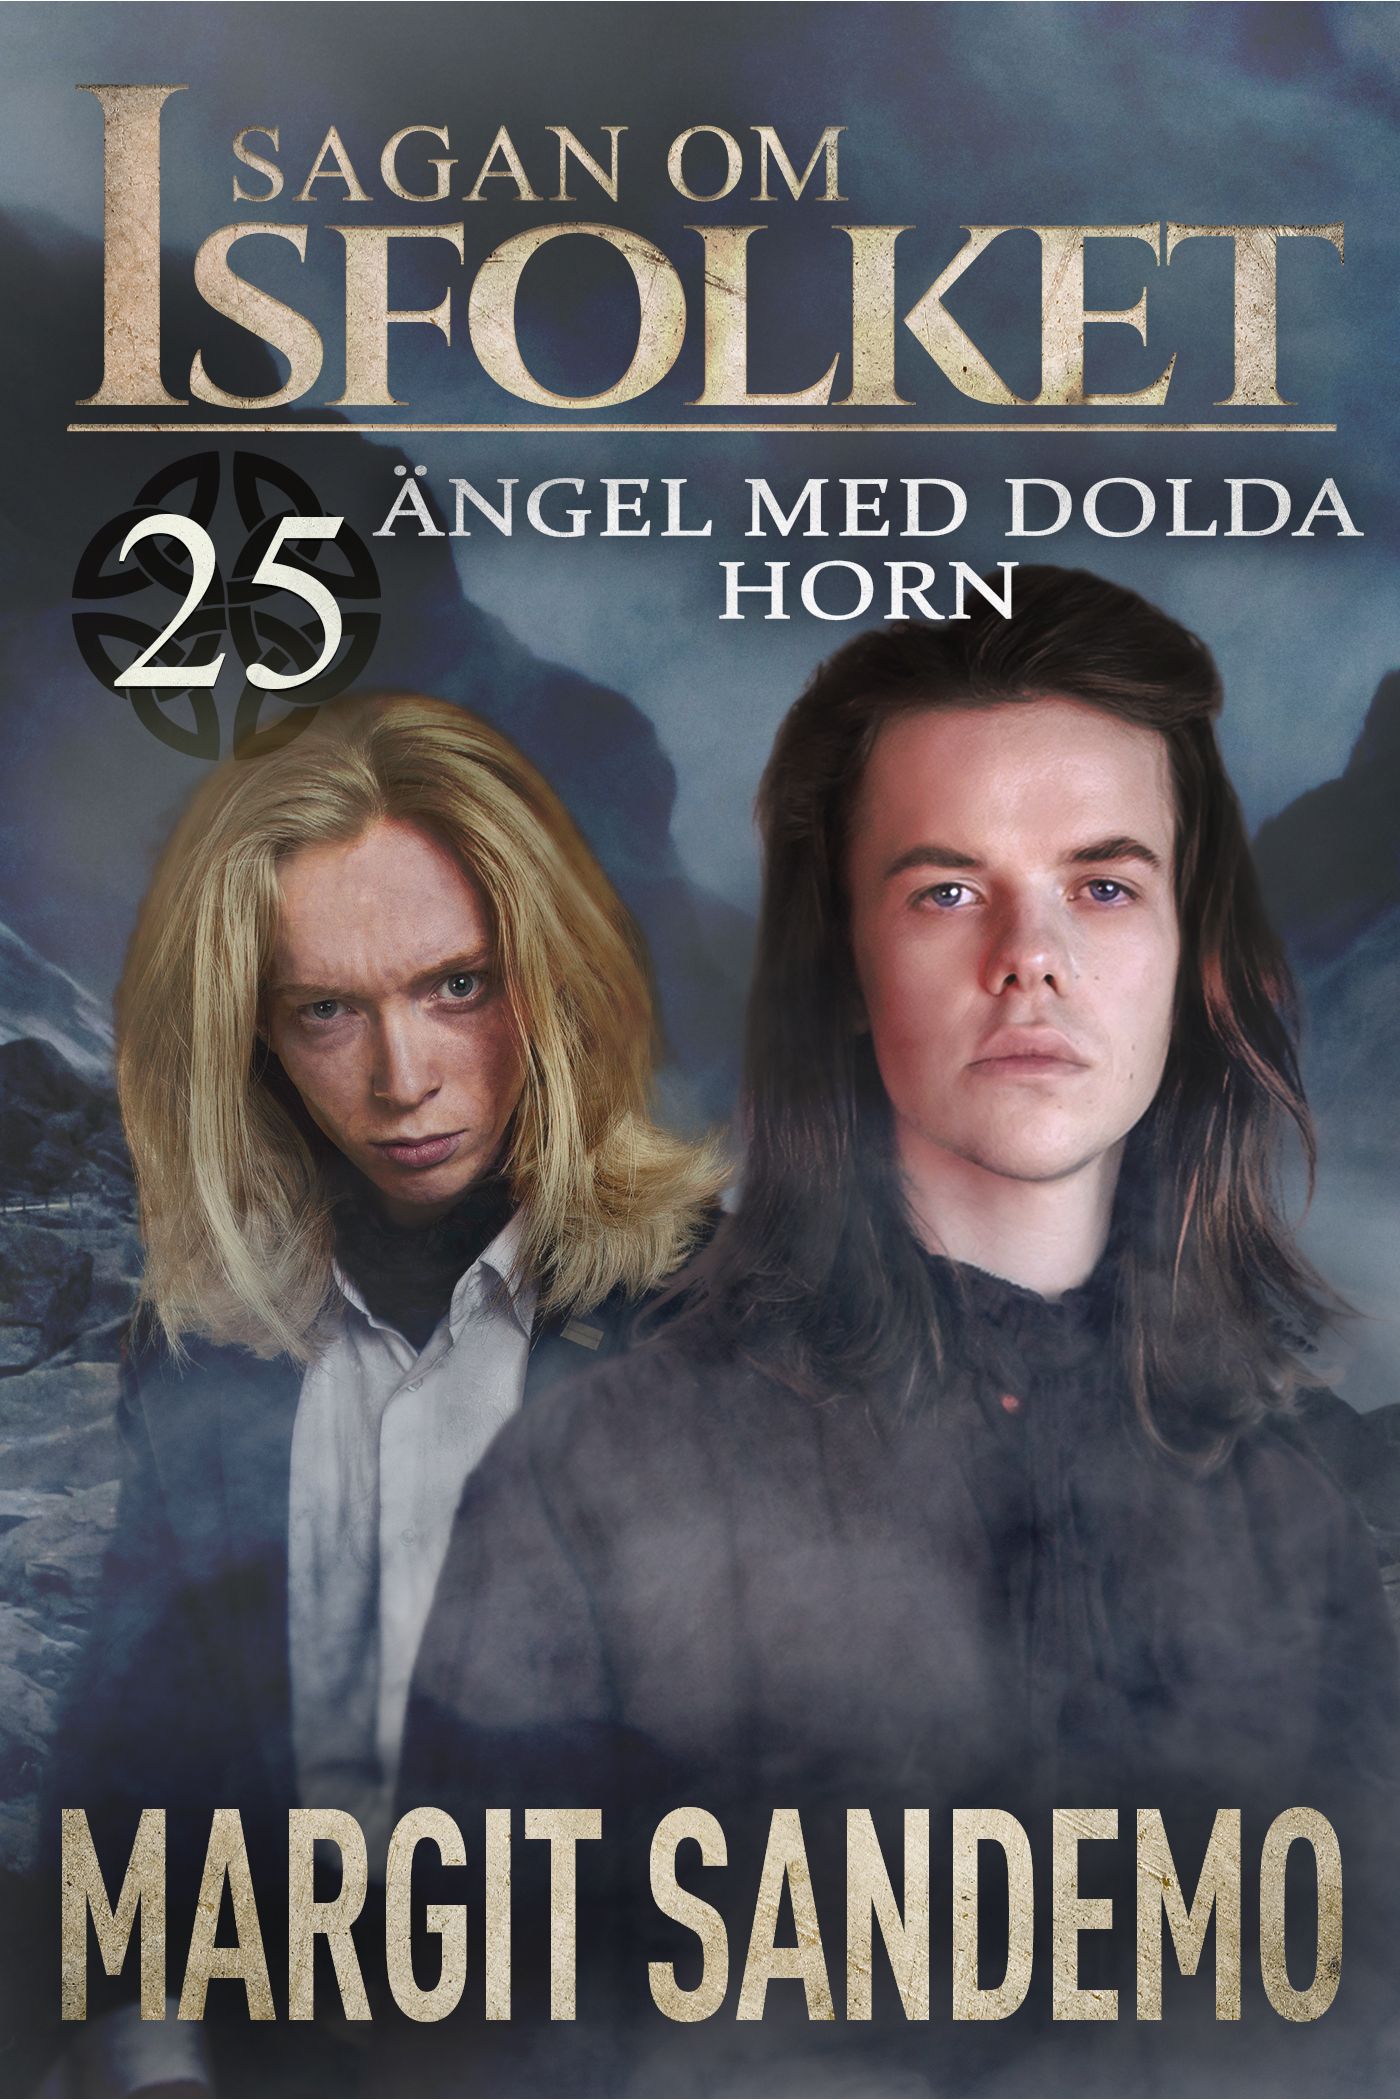 Ängel med dolda horn: Sagan om Isfolket 25, e-bok av Margit Sandemo